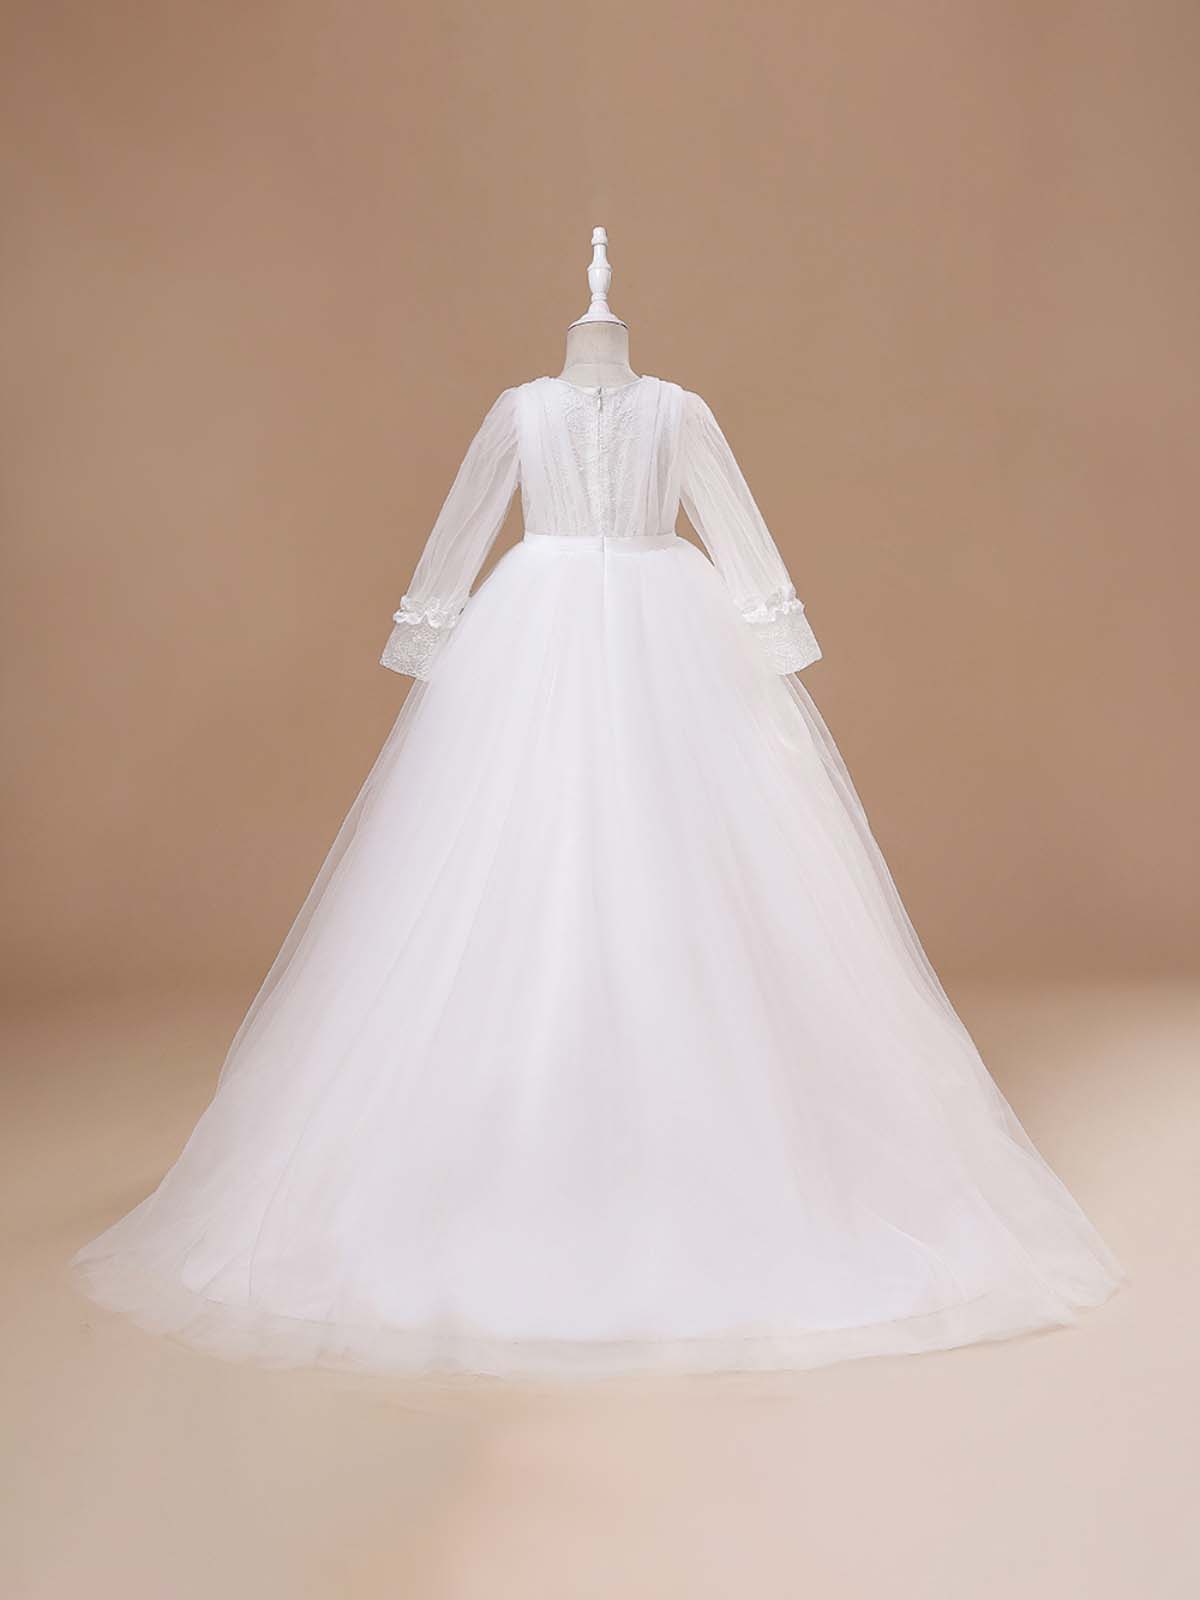 Girls Communion Dresses | White Sheer Long Sleeve Tulle Train Gown